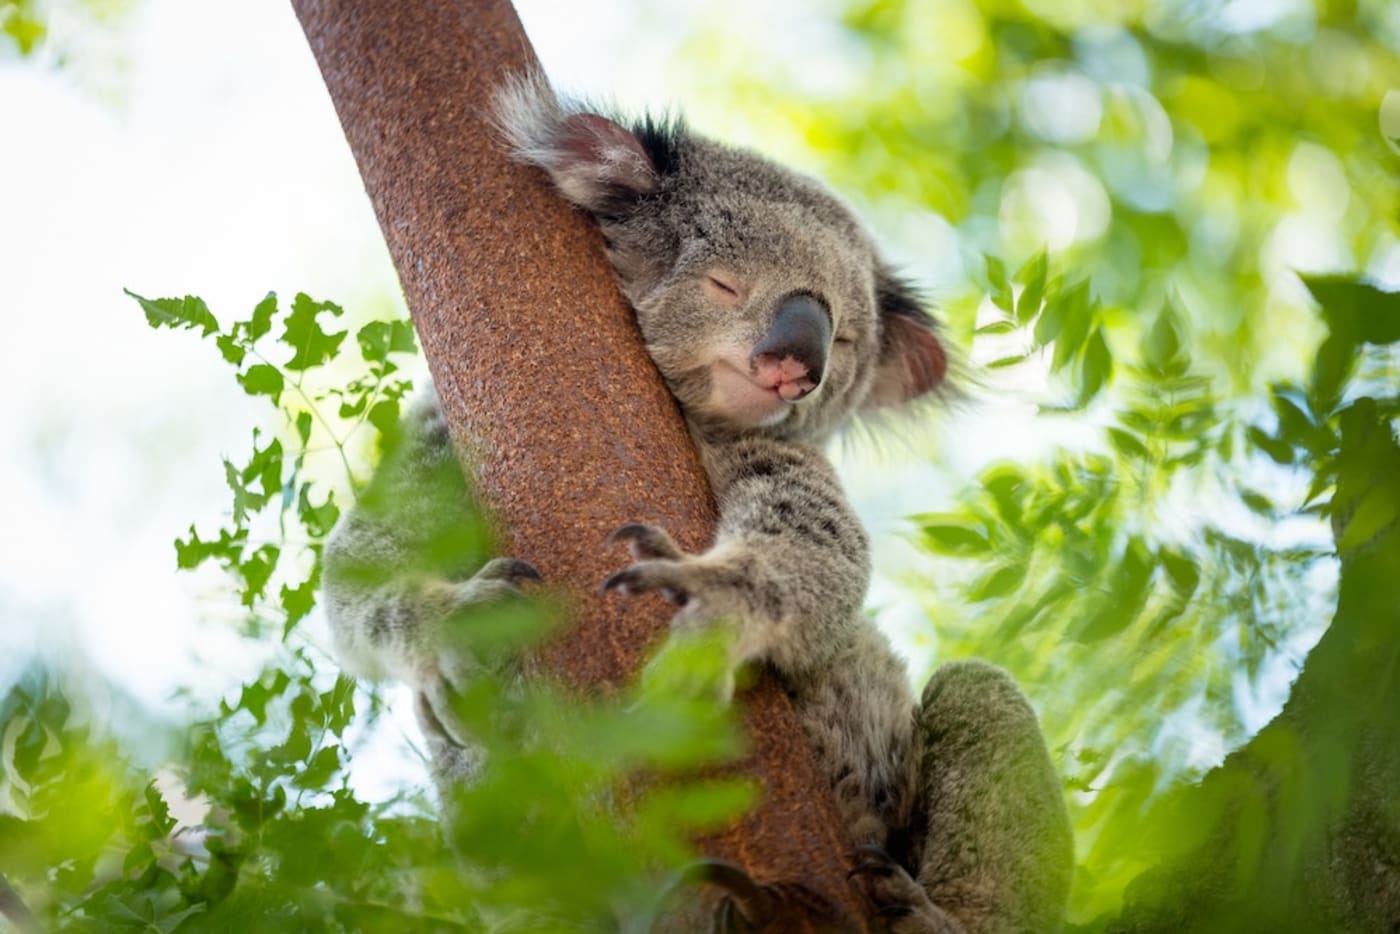 Koala dozes in a tree